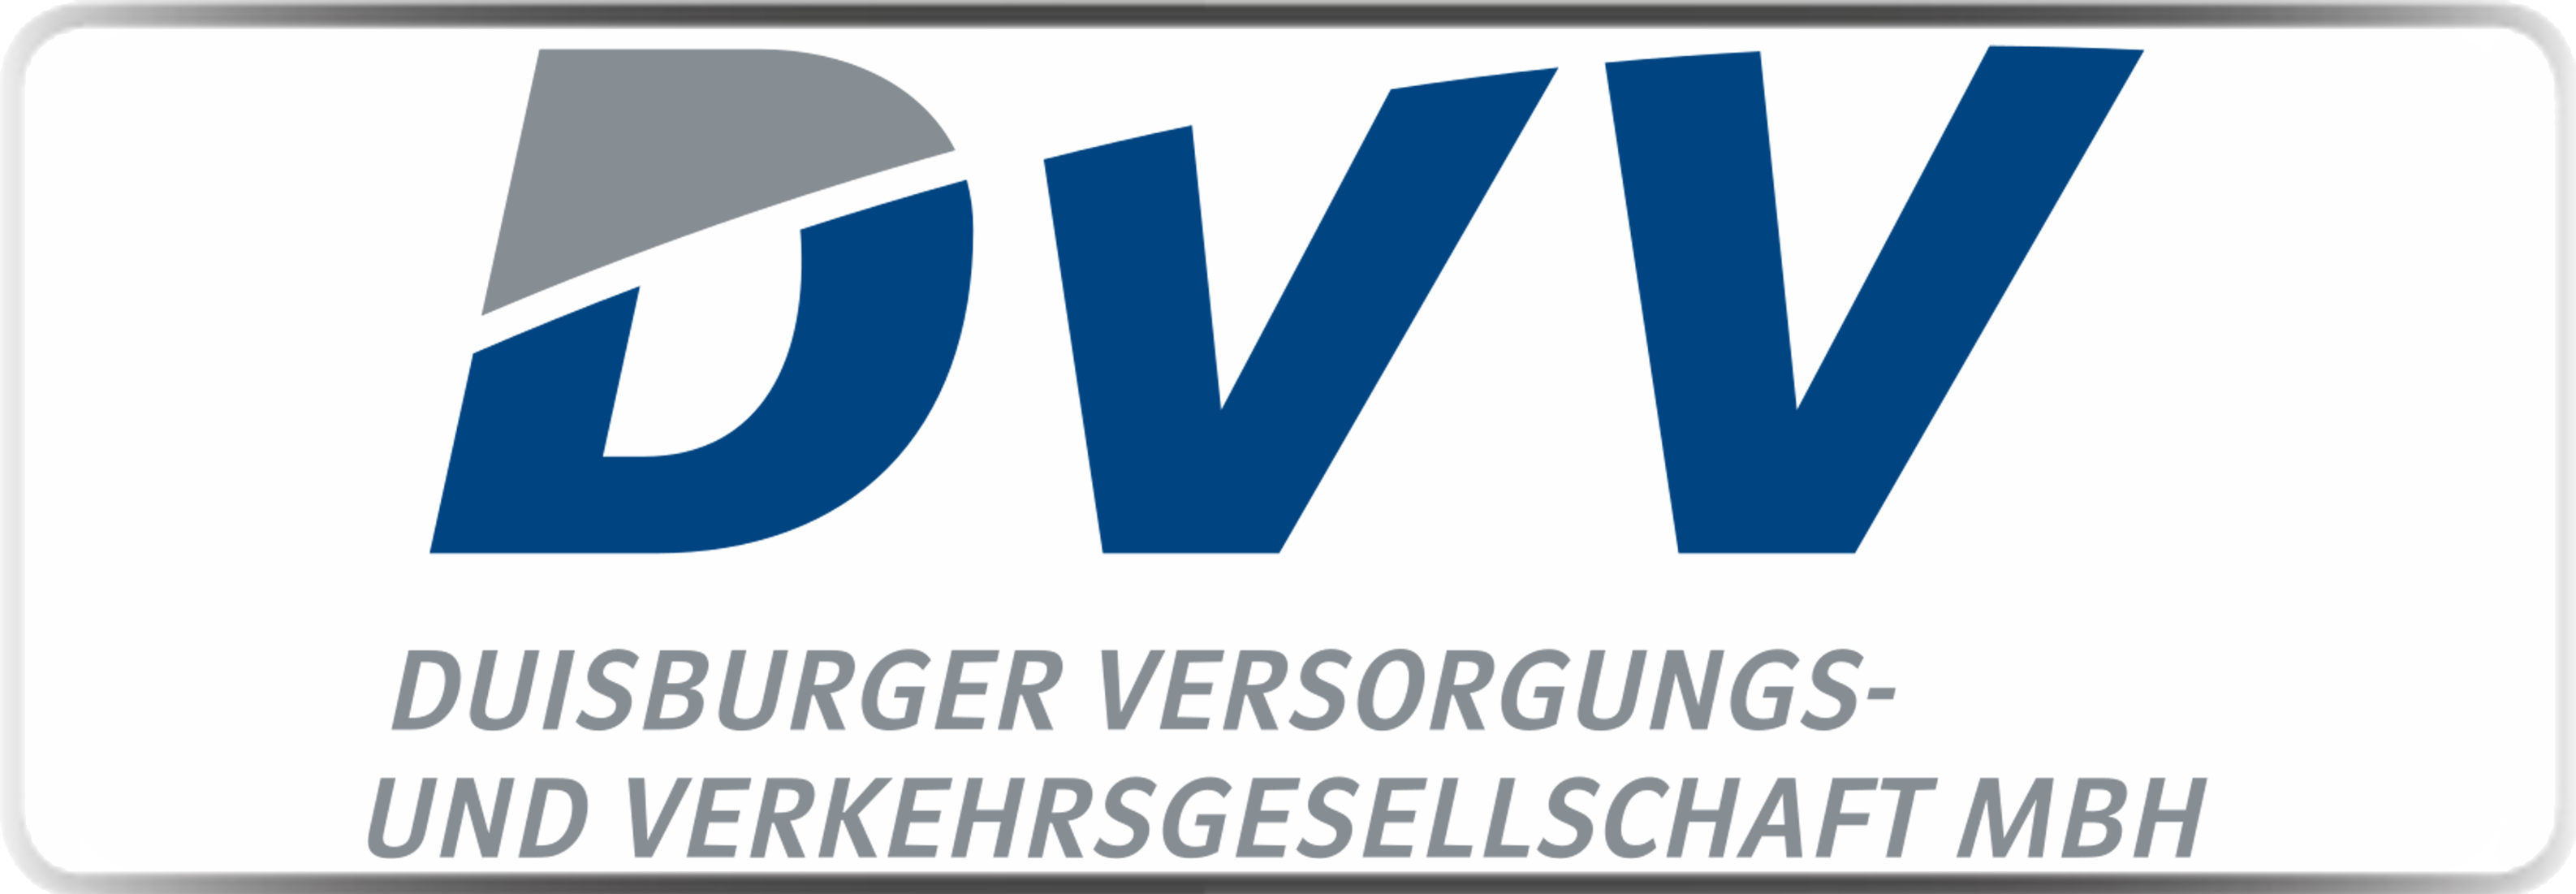 Logo-Duisburger Versorgungs- und Verkehrsgesellschaft